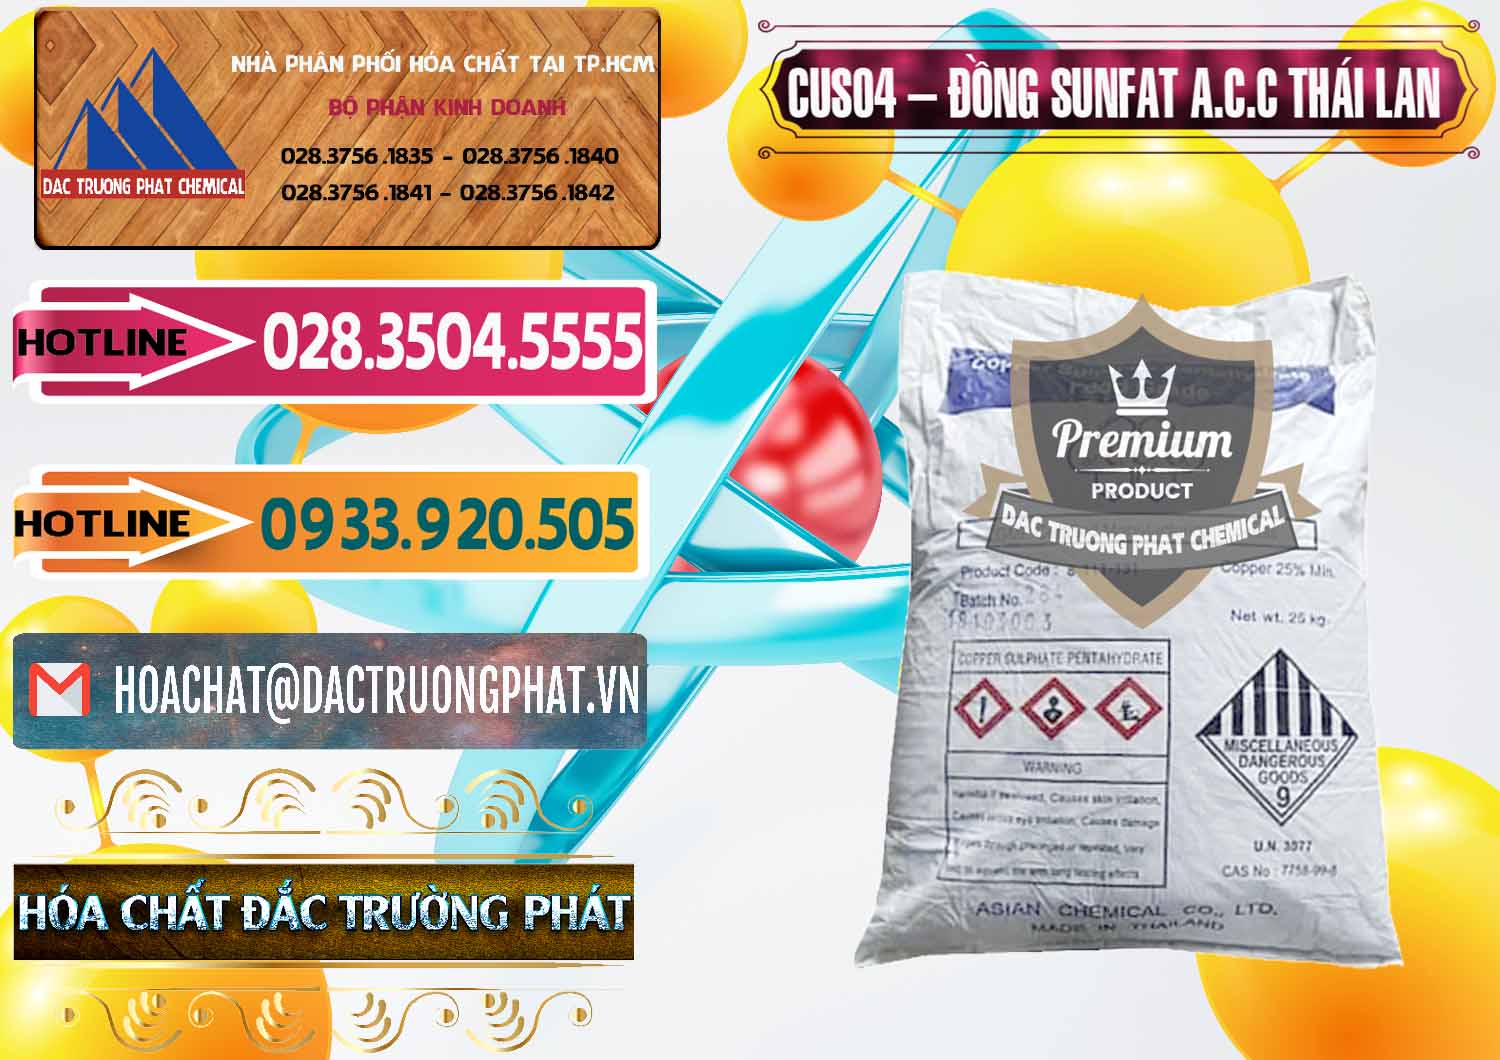 Công ty chuyên bán & cung ứng CuSO4 – Đồng Sunfat A.C.C Thái Lan - 0249 - Cty chuyên kinh doanh _ cung cấp hóa chất tại TP.HCM - dactruongphat.vn